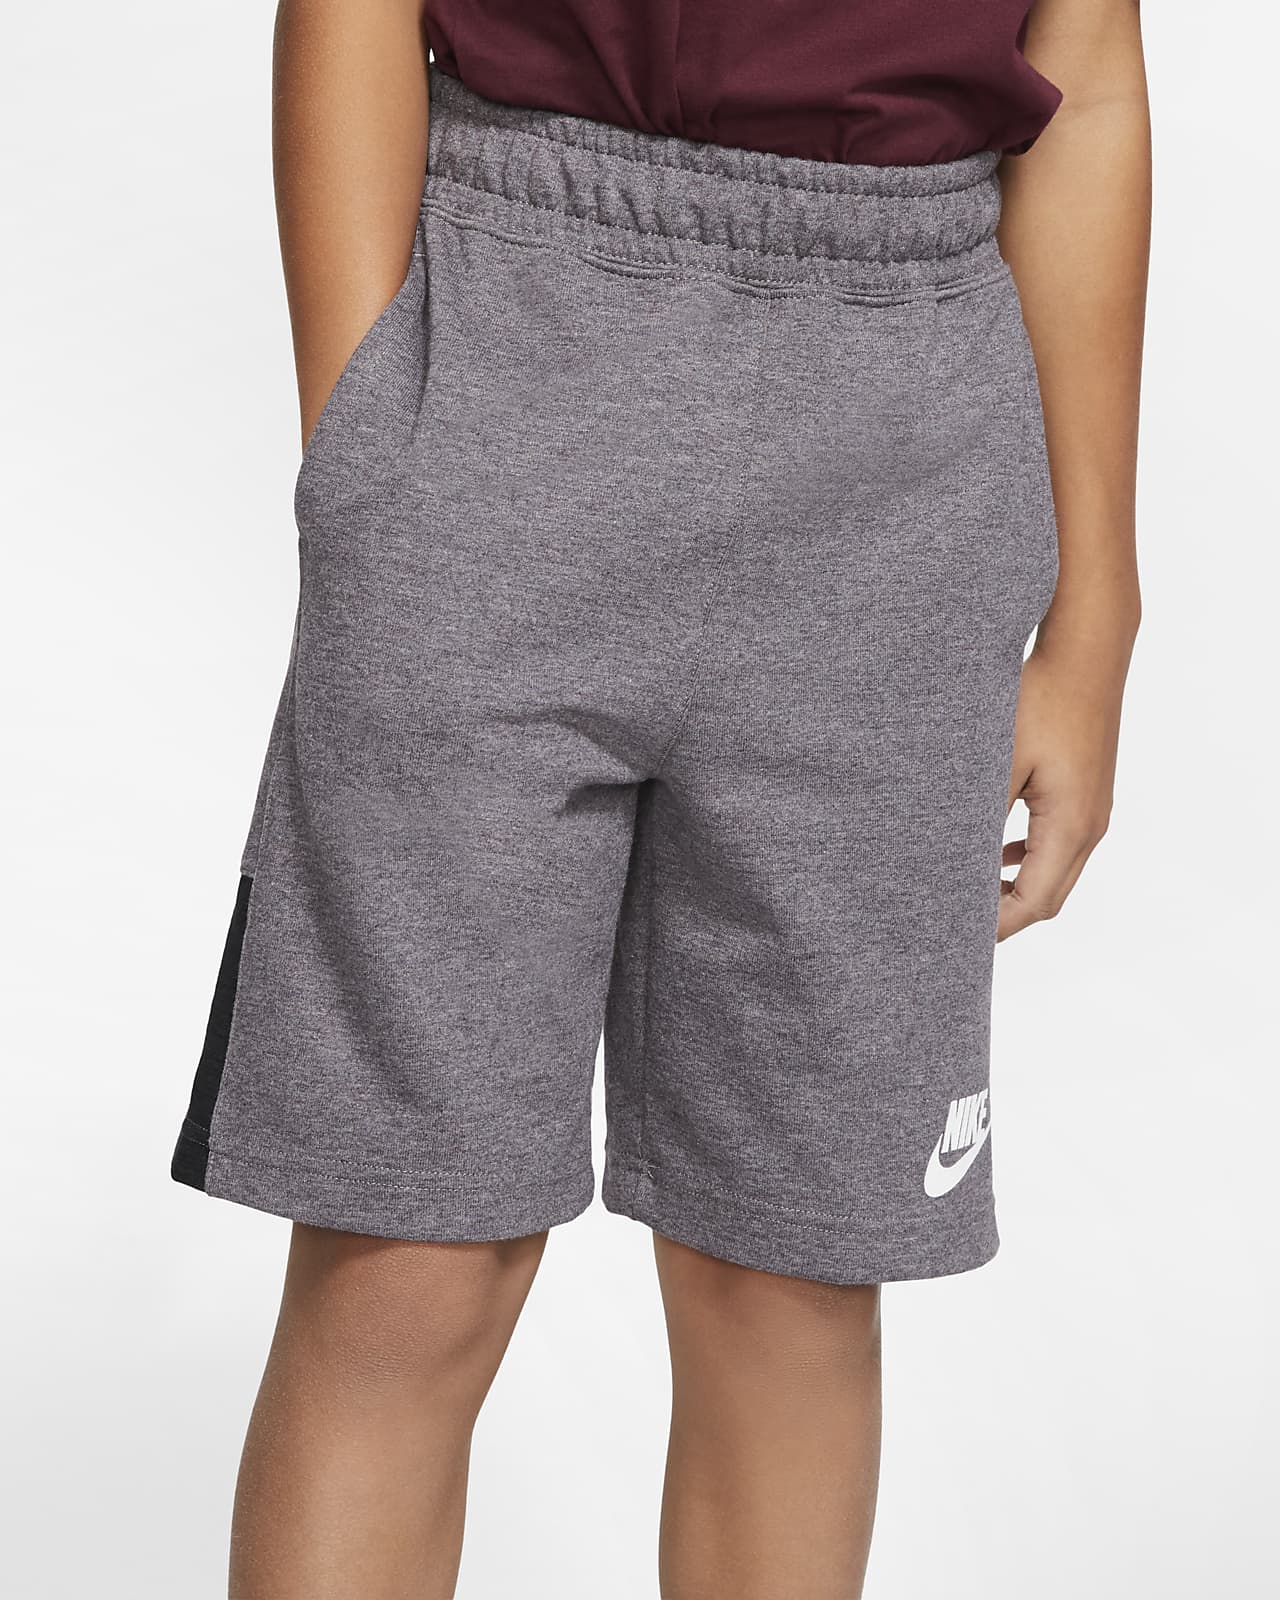 grey nike boy shorts